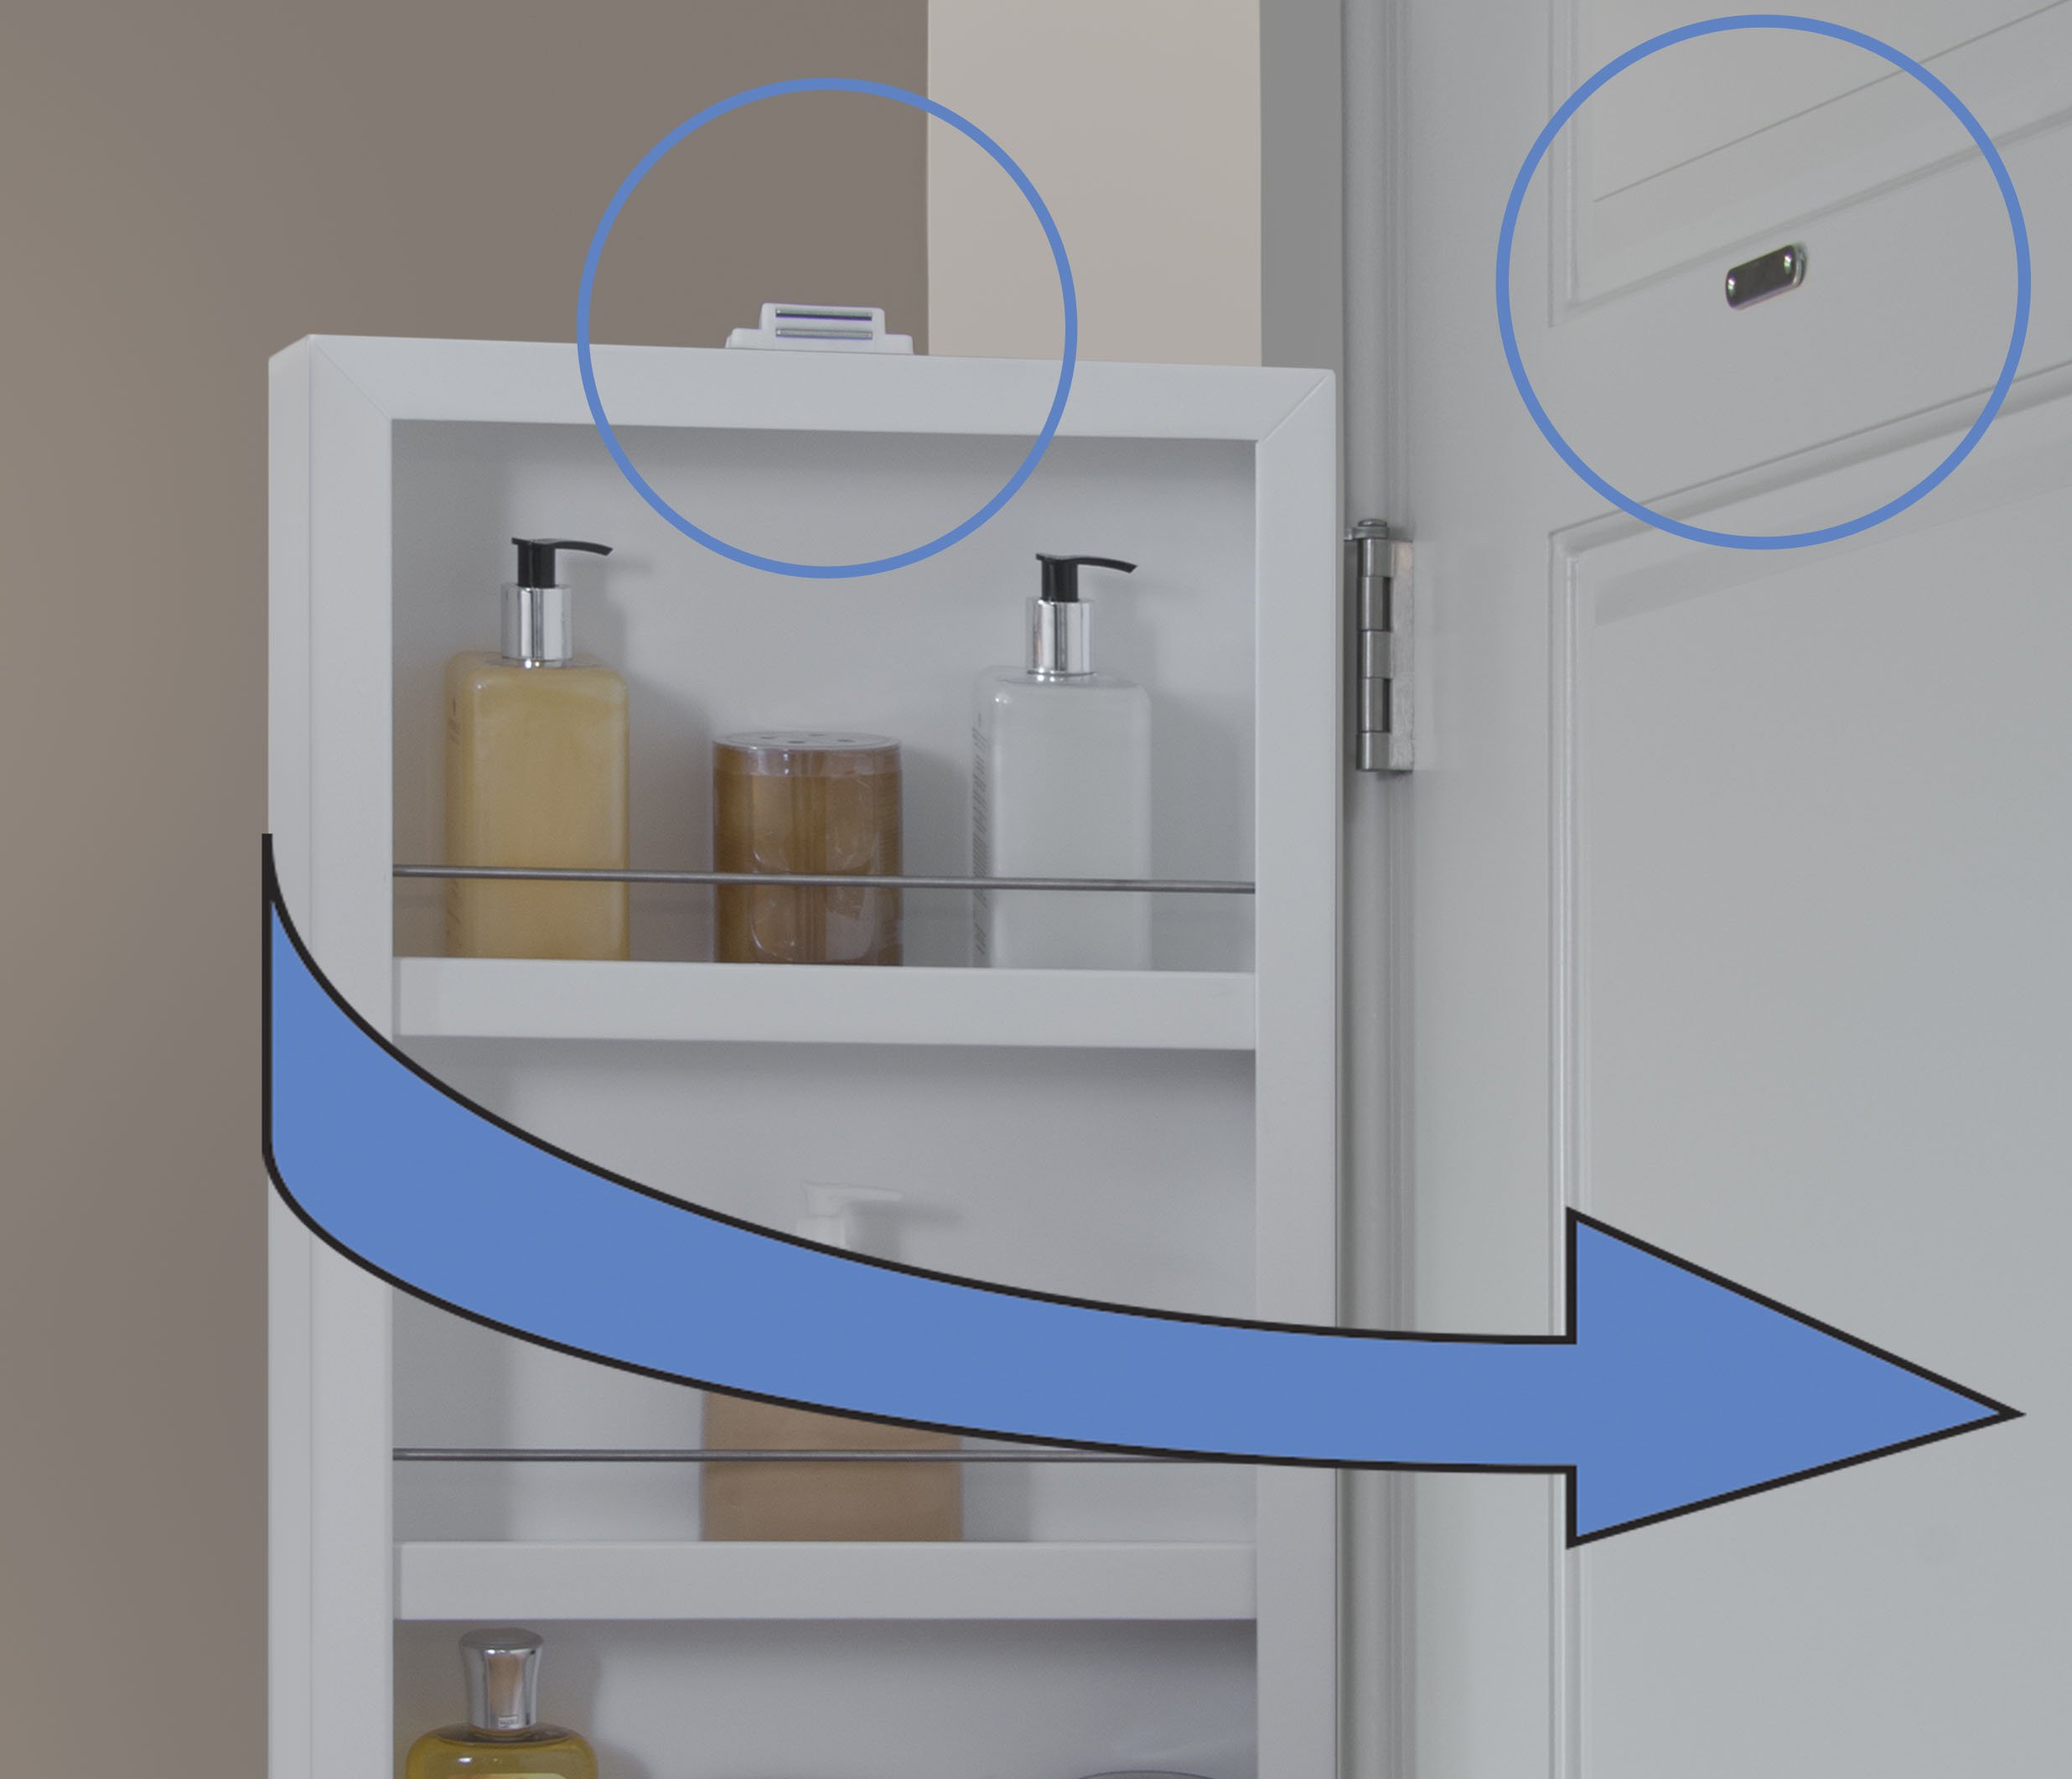 Cabidor Deluxe Mirrored Behind The Door Adjustable Medicine Cabinet, Kitchen & Bathroom Storage Cabinet